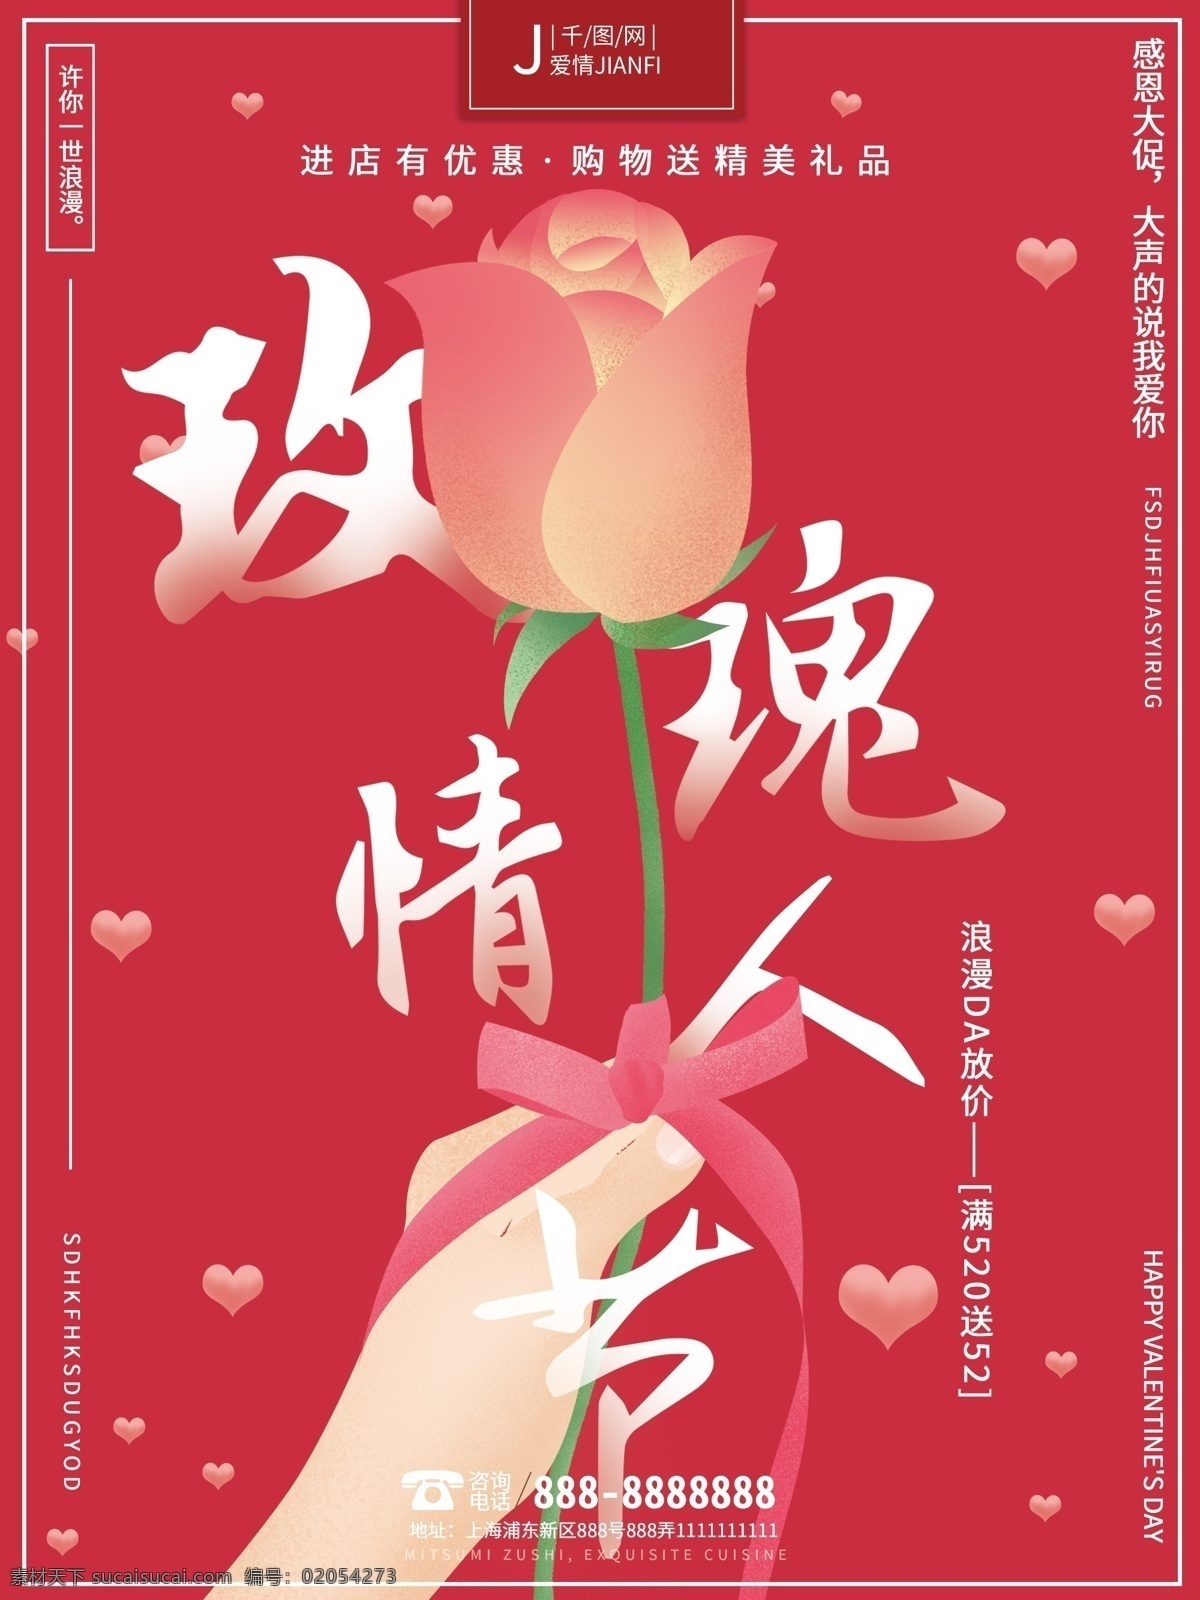 原创 手绘 浪漫 温馨 唯美 520 玫瑰 情人节 海报 浪漫唯美 情人节海报 玫瑰海报 促销海报